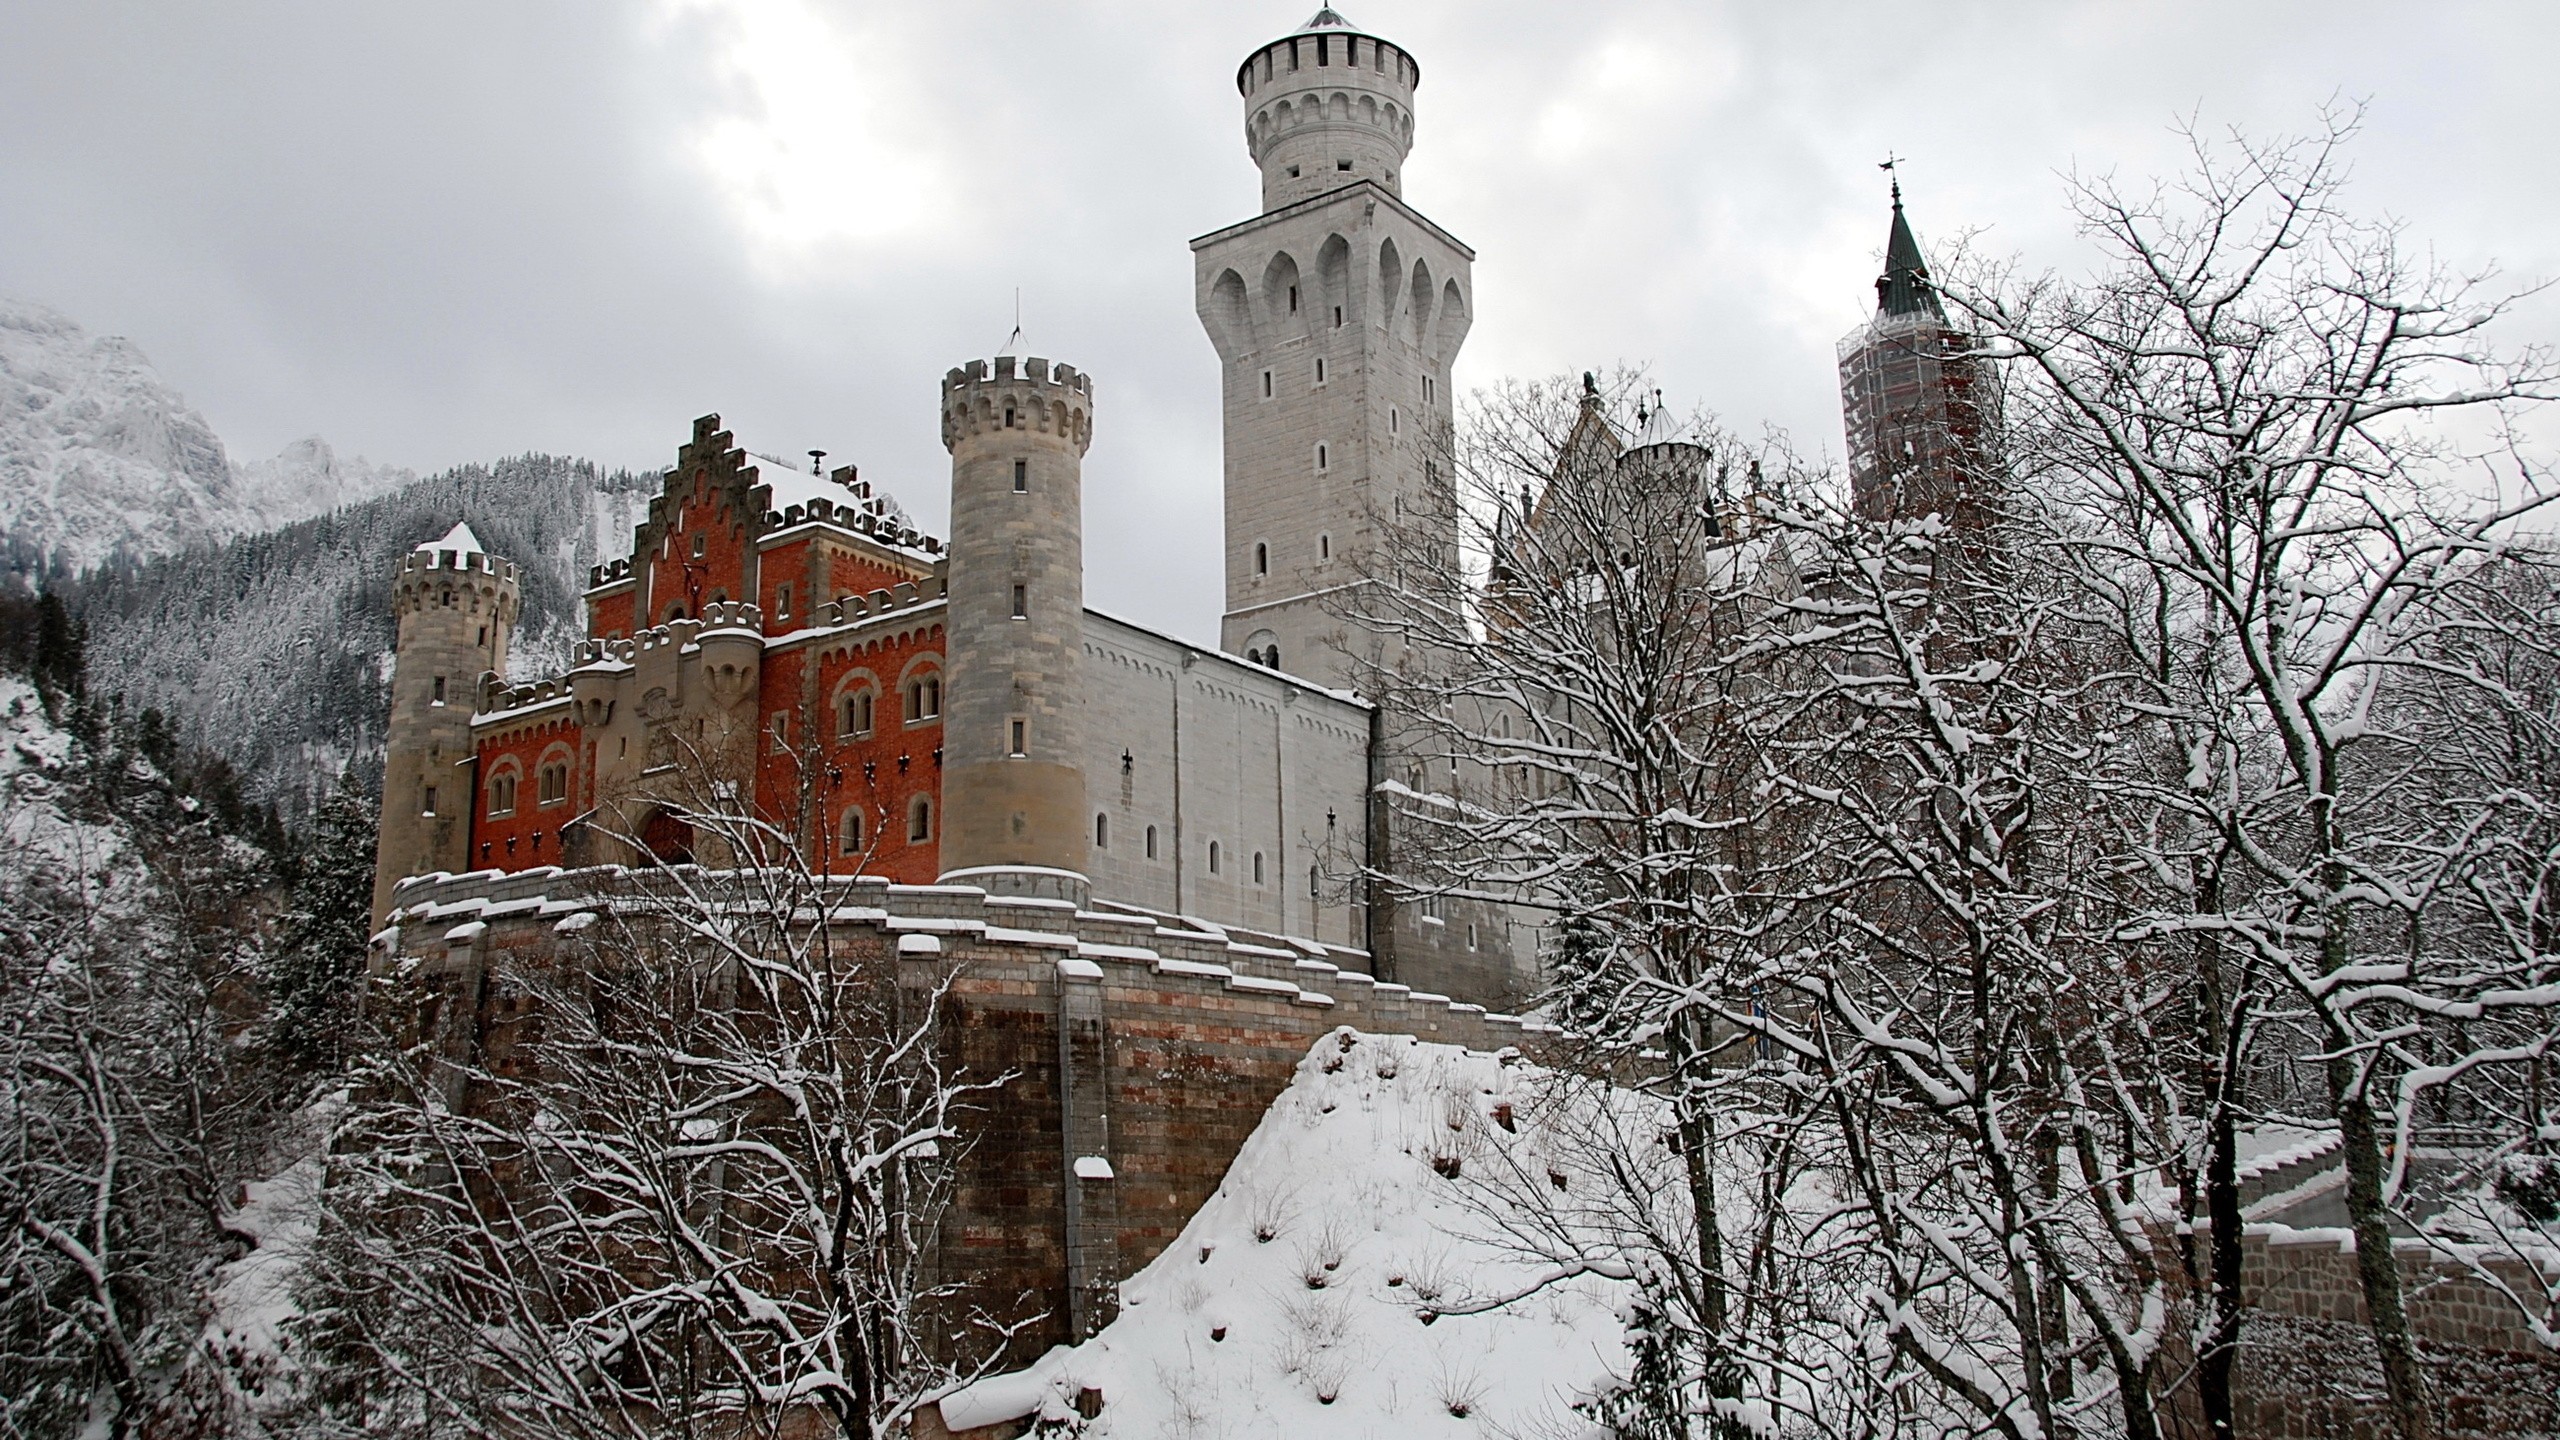 General 2560x1440 castle snow winter Neuschwanstein Castle Germany Bavaria